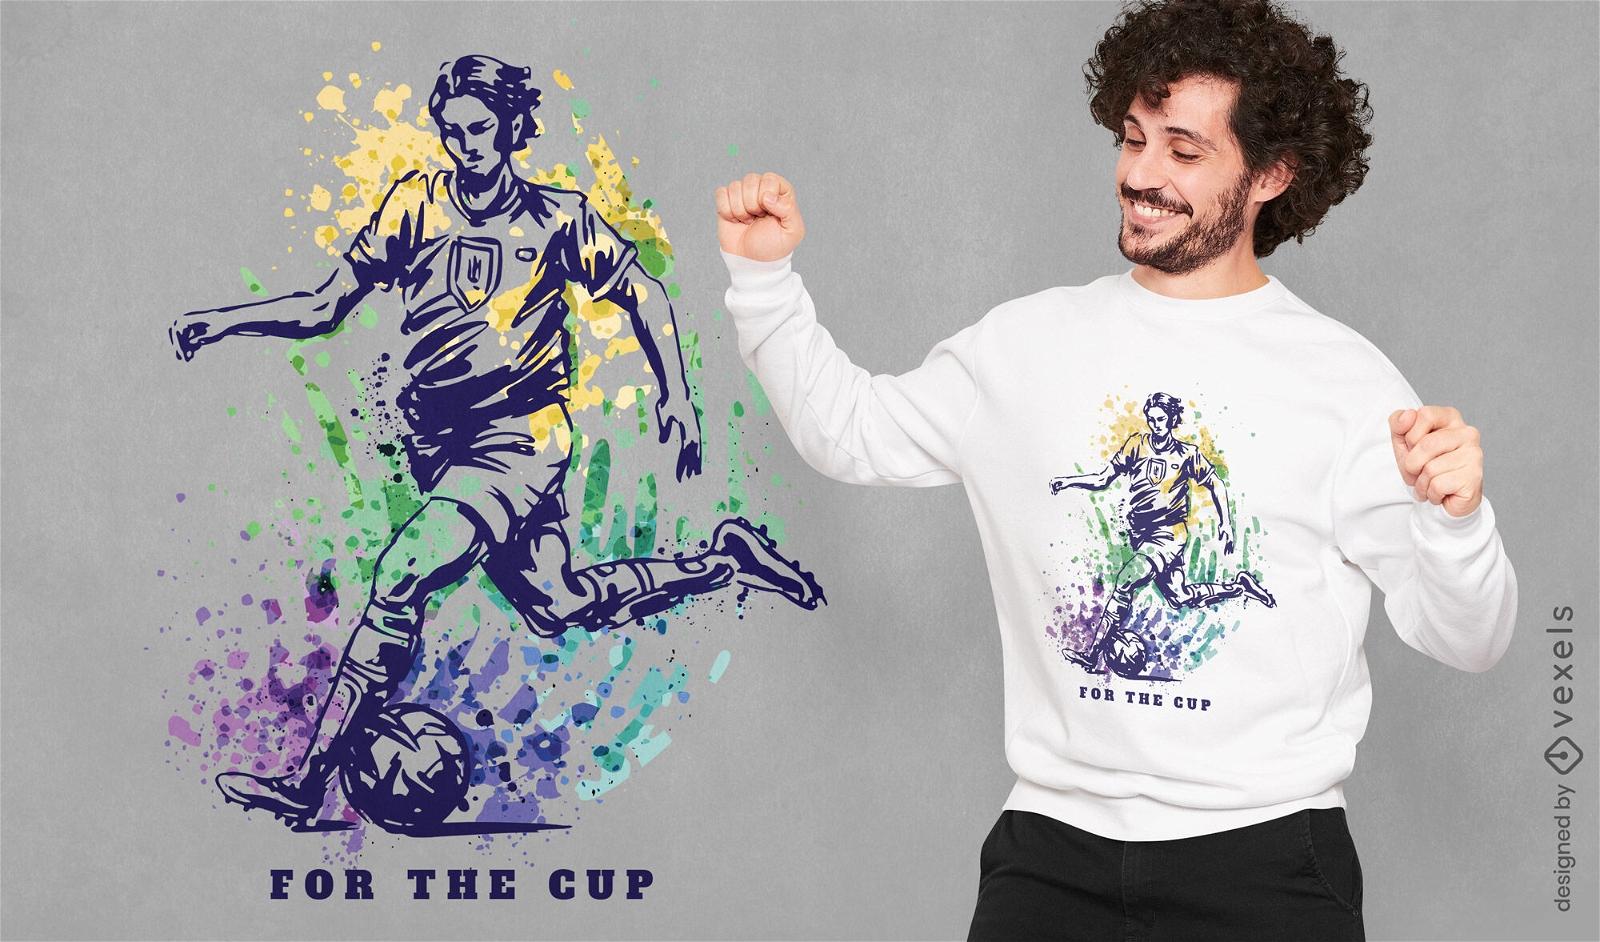 Buntes Weltcup-Fußballspieler-T-Shirt Design